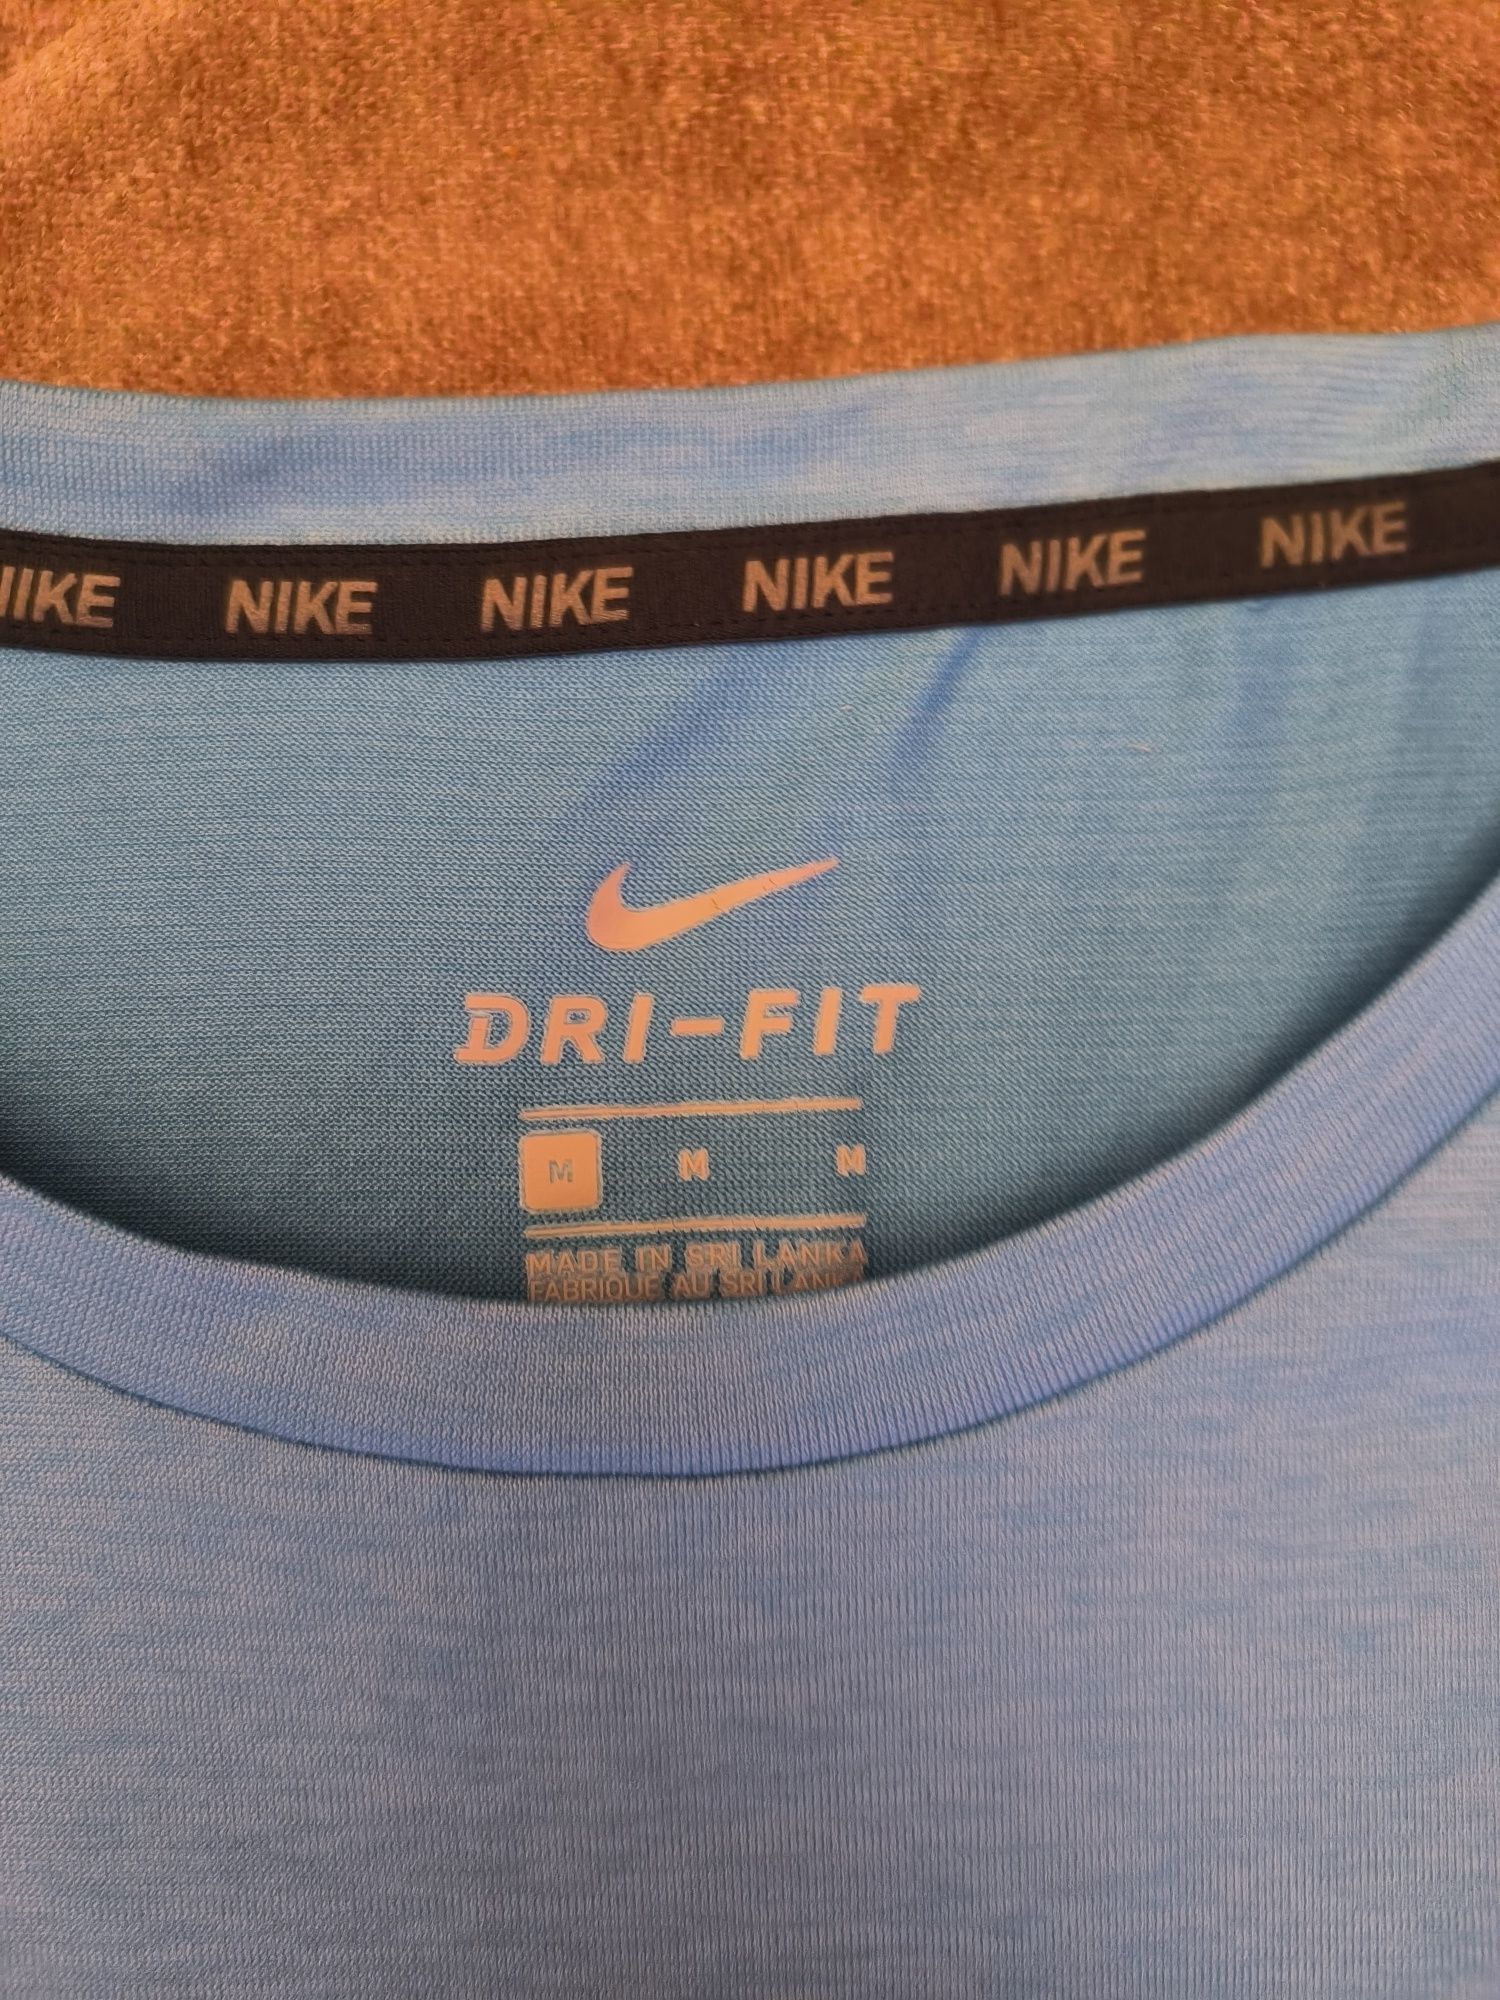 Nike потник размер M , L